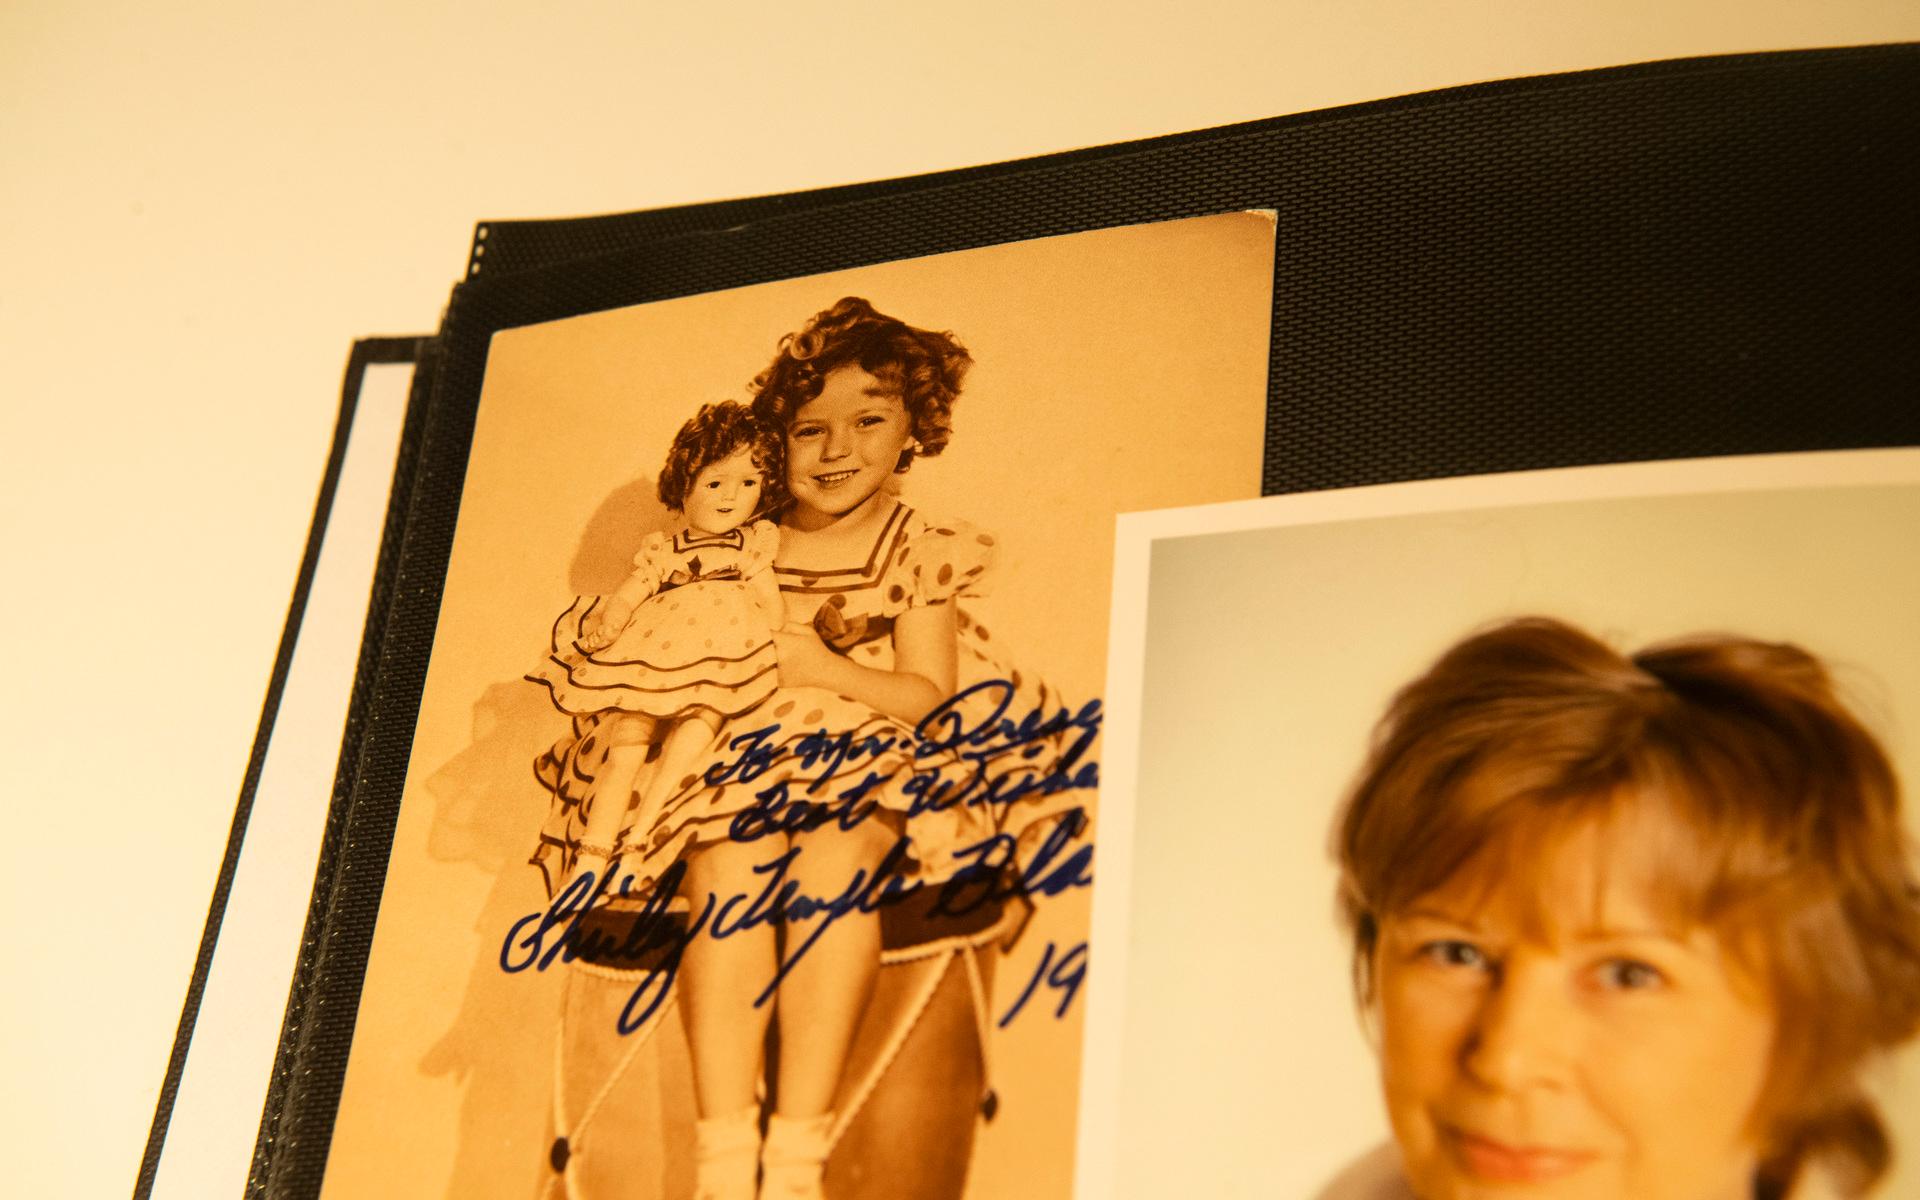 Barnskådisen Shirley Temple med sina korkskruvslockar.